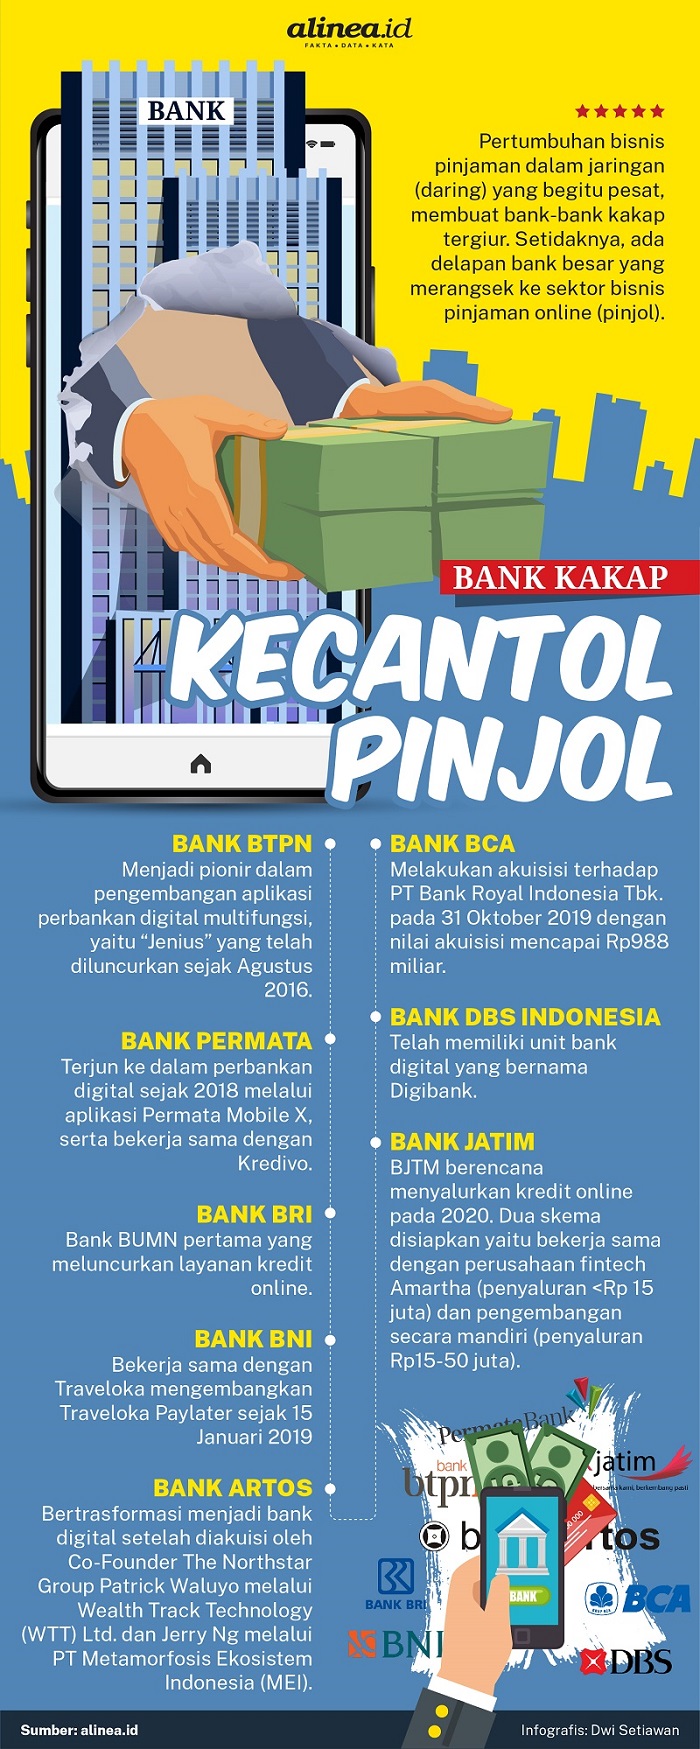 Infografik bank-bank besar merangsek ke sektor bisnis pinjaman online. Alinea.id/Dwi Setiawan